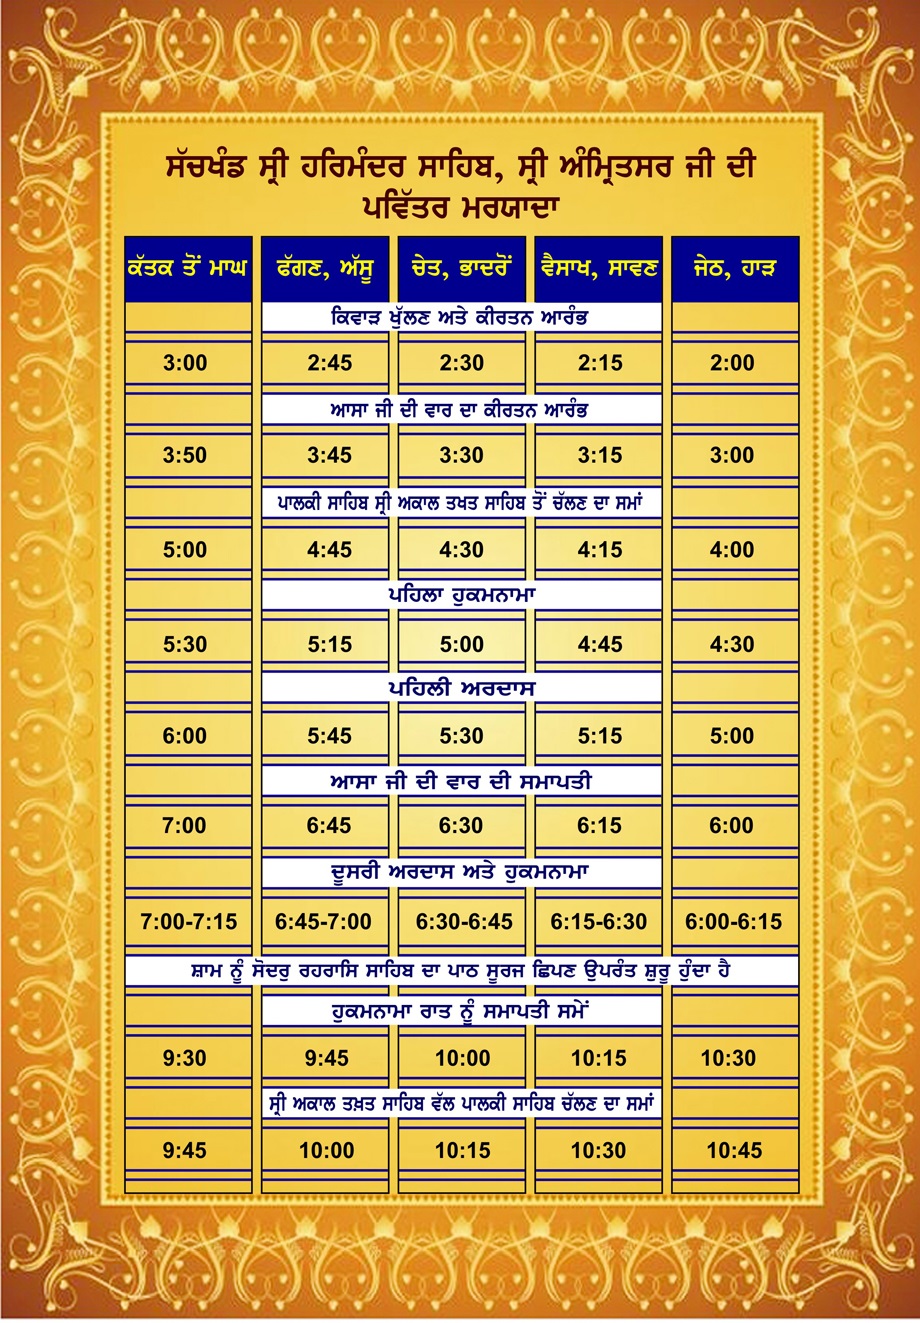 Daily routine of Sachkhand Sri Harmandir Sahib